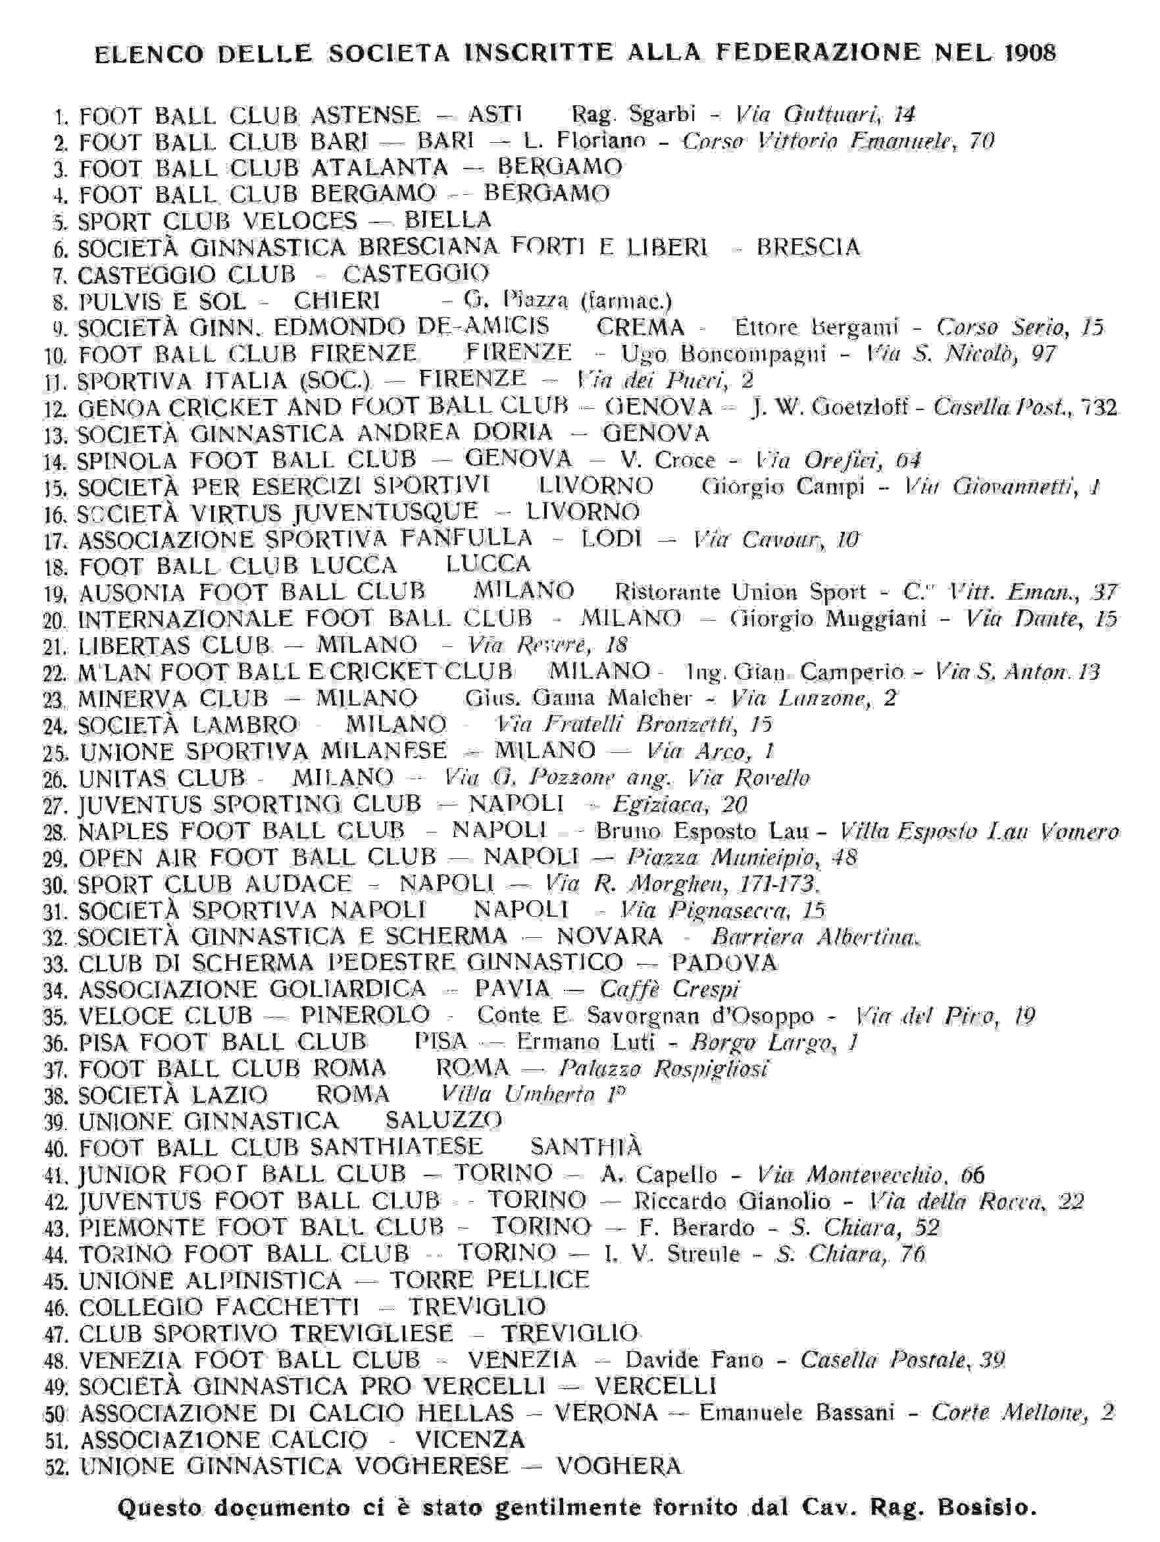 squadre iscritte alla FIF nel 1905